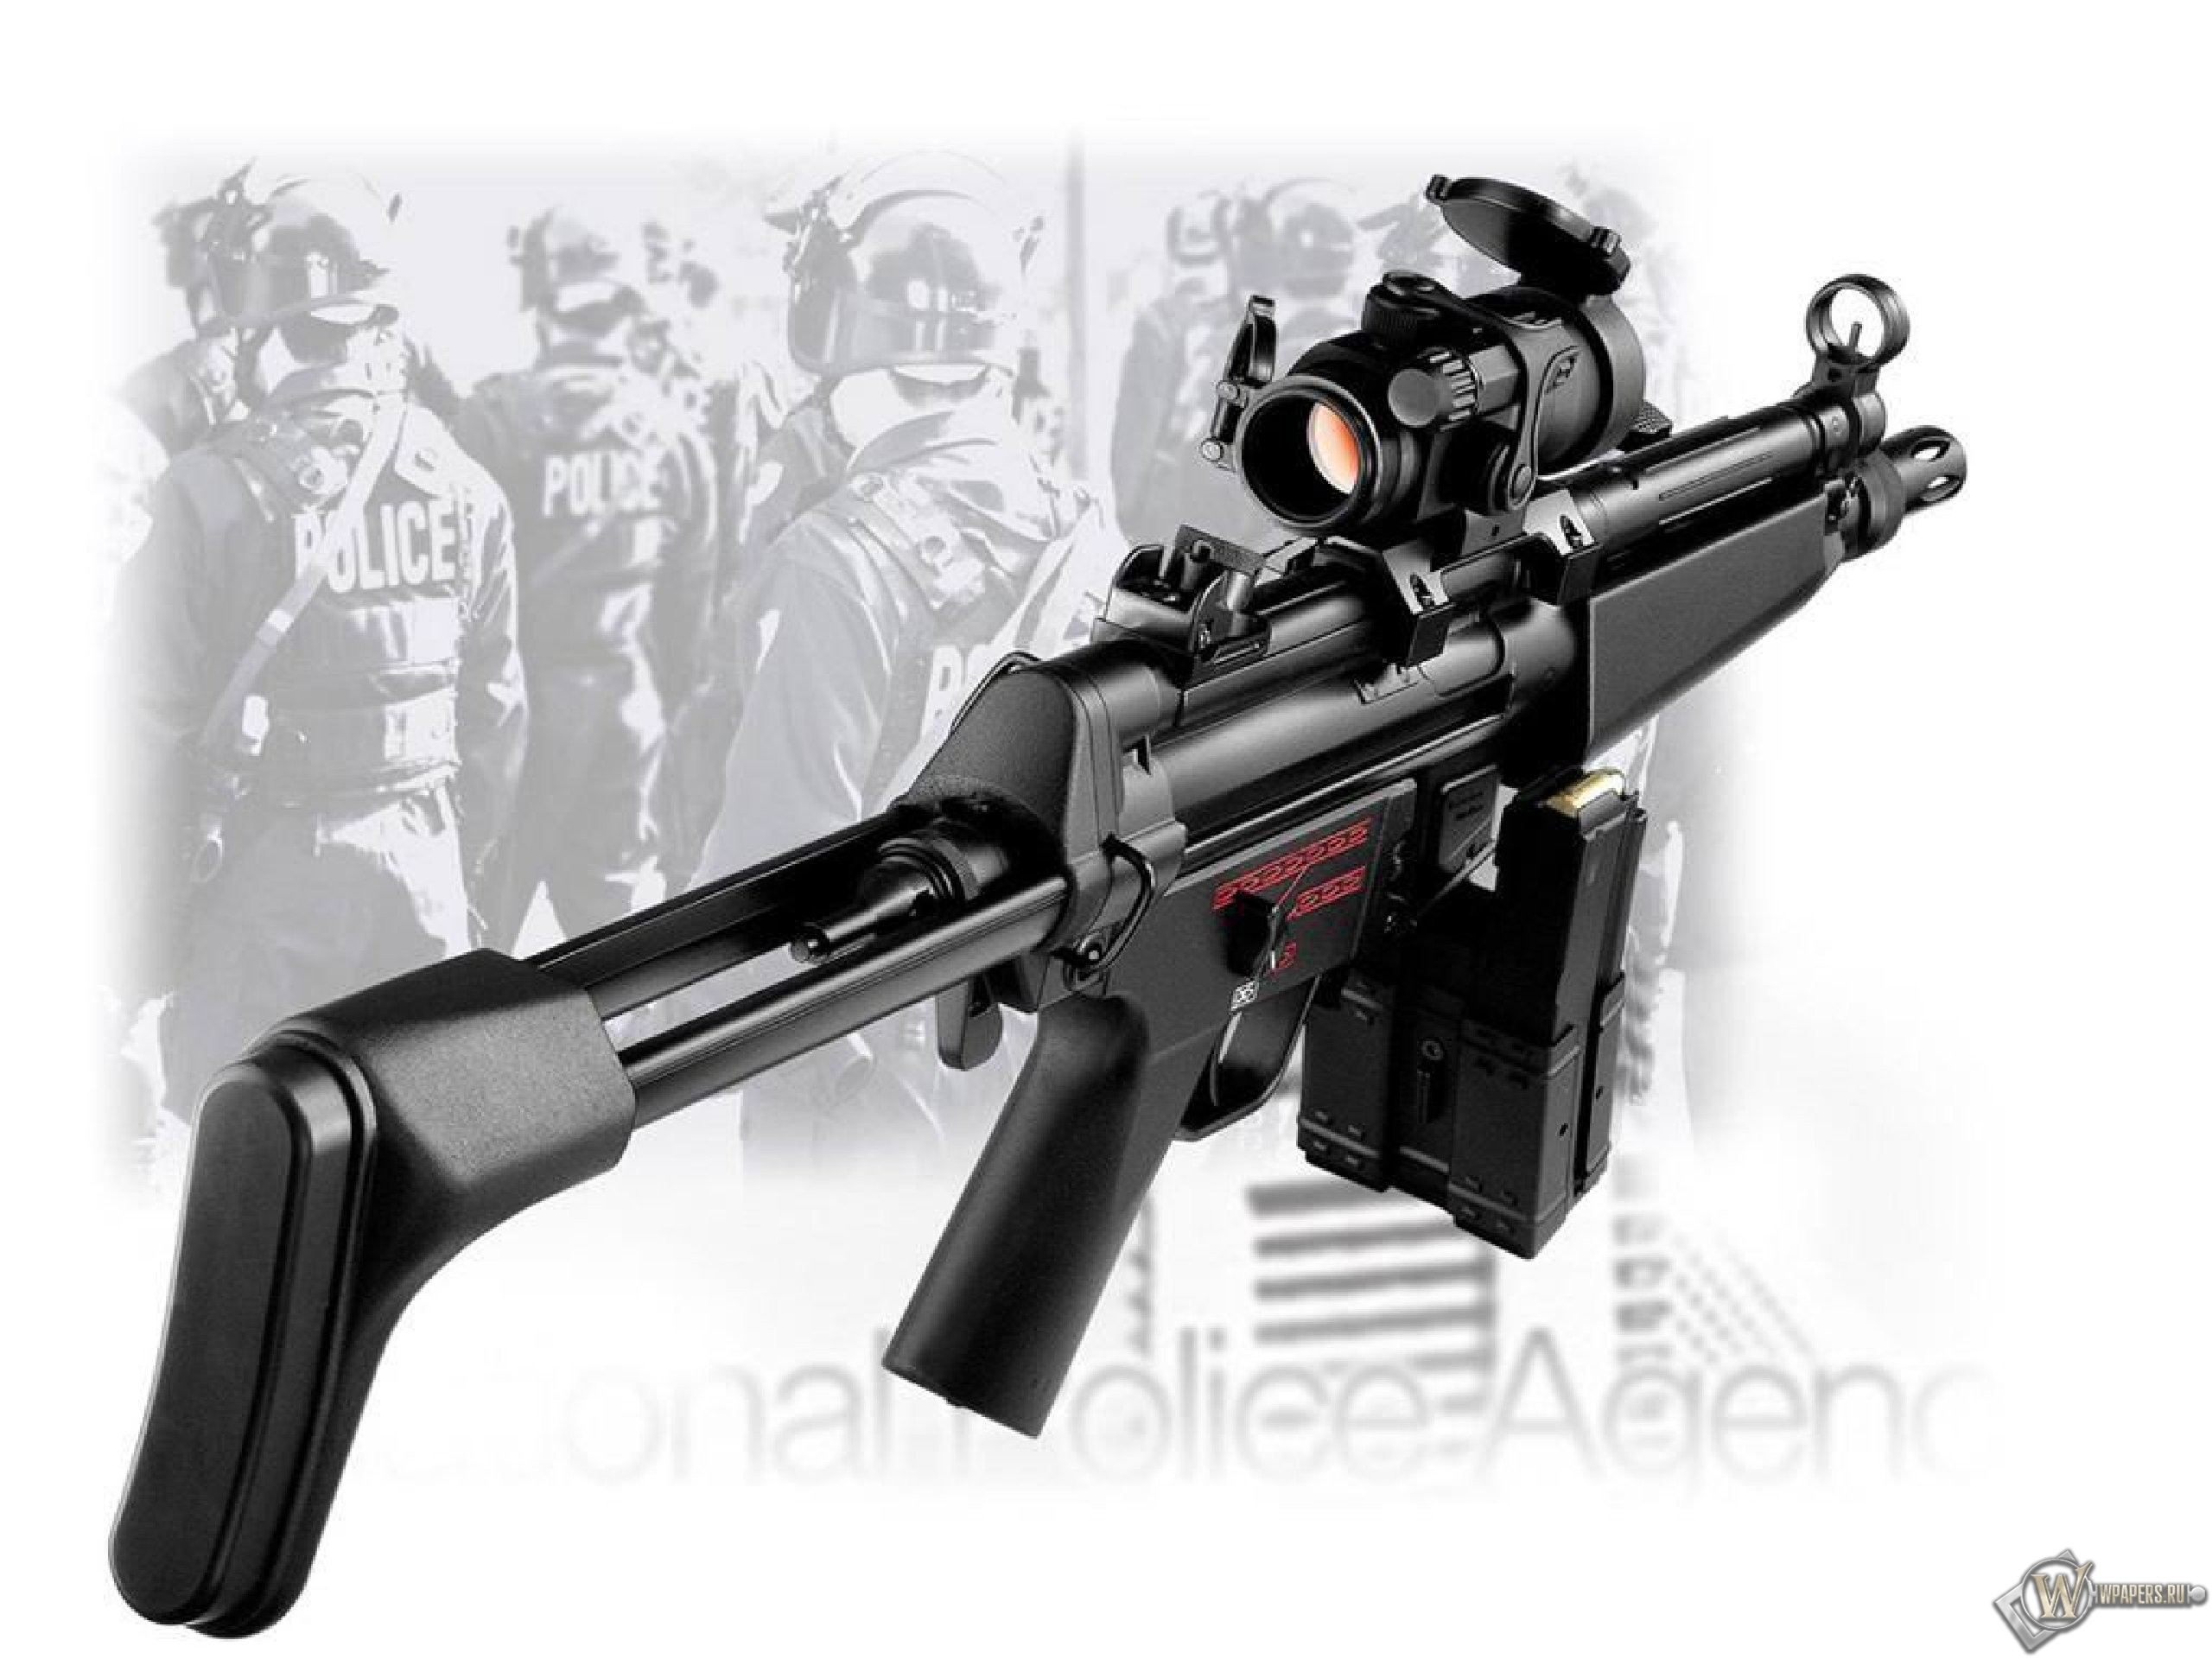 HK MP5 2560x1920